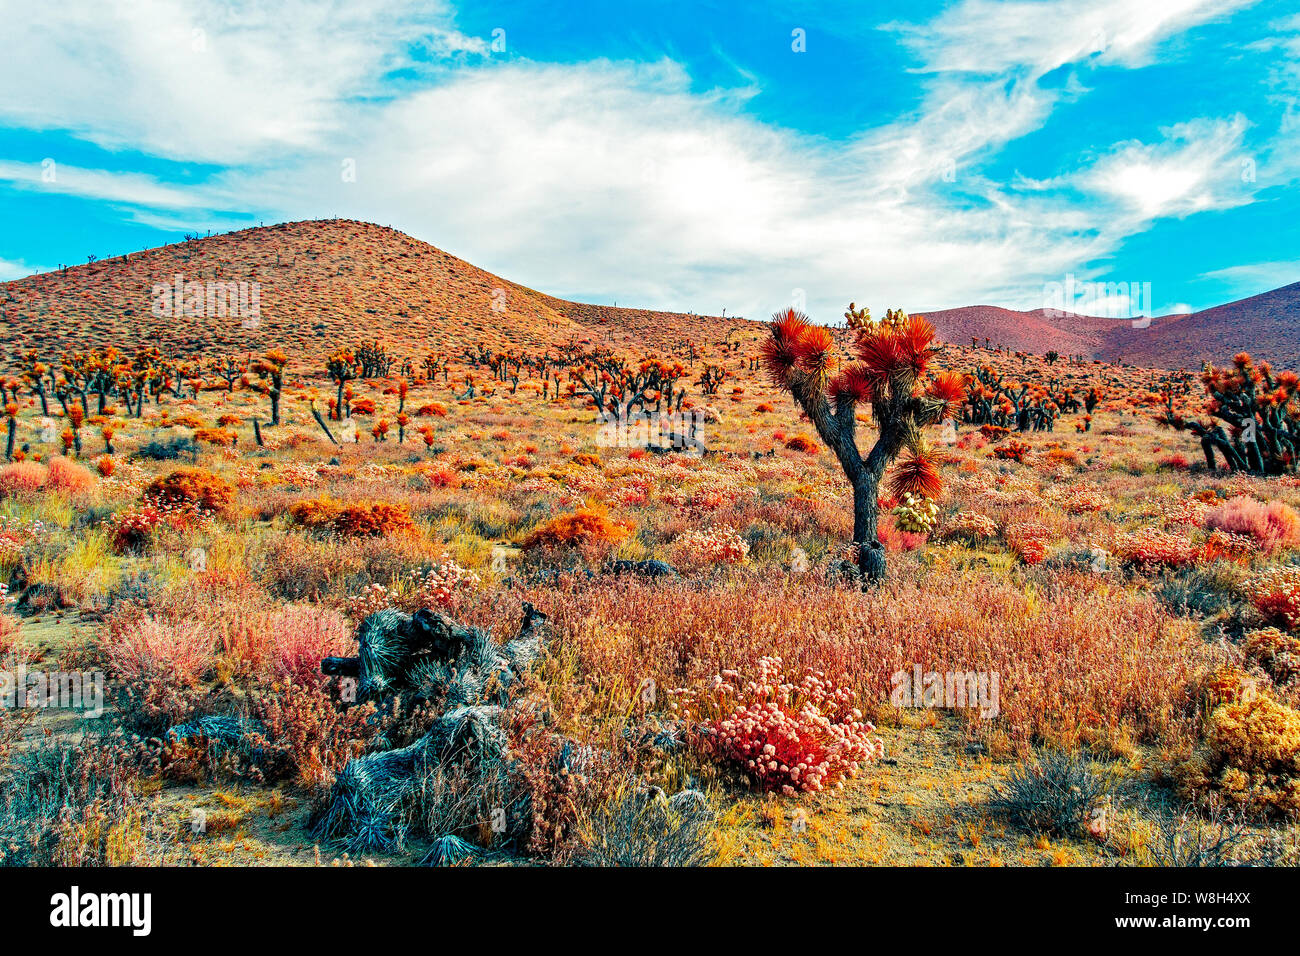 La vallée du désert avec Joshua trees, cactus et pinceau. Désert aride montagne sous ciel bleu avec des nuages blancs. Banque D'Images